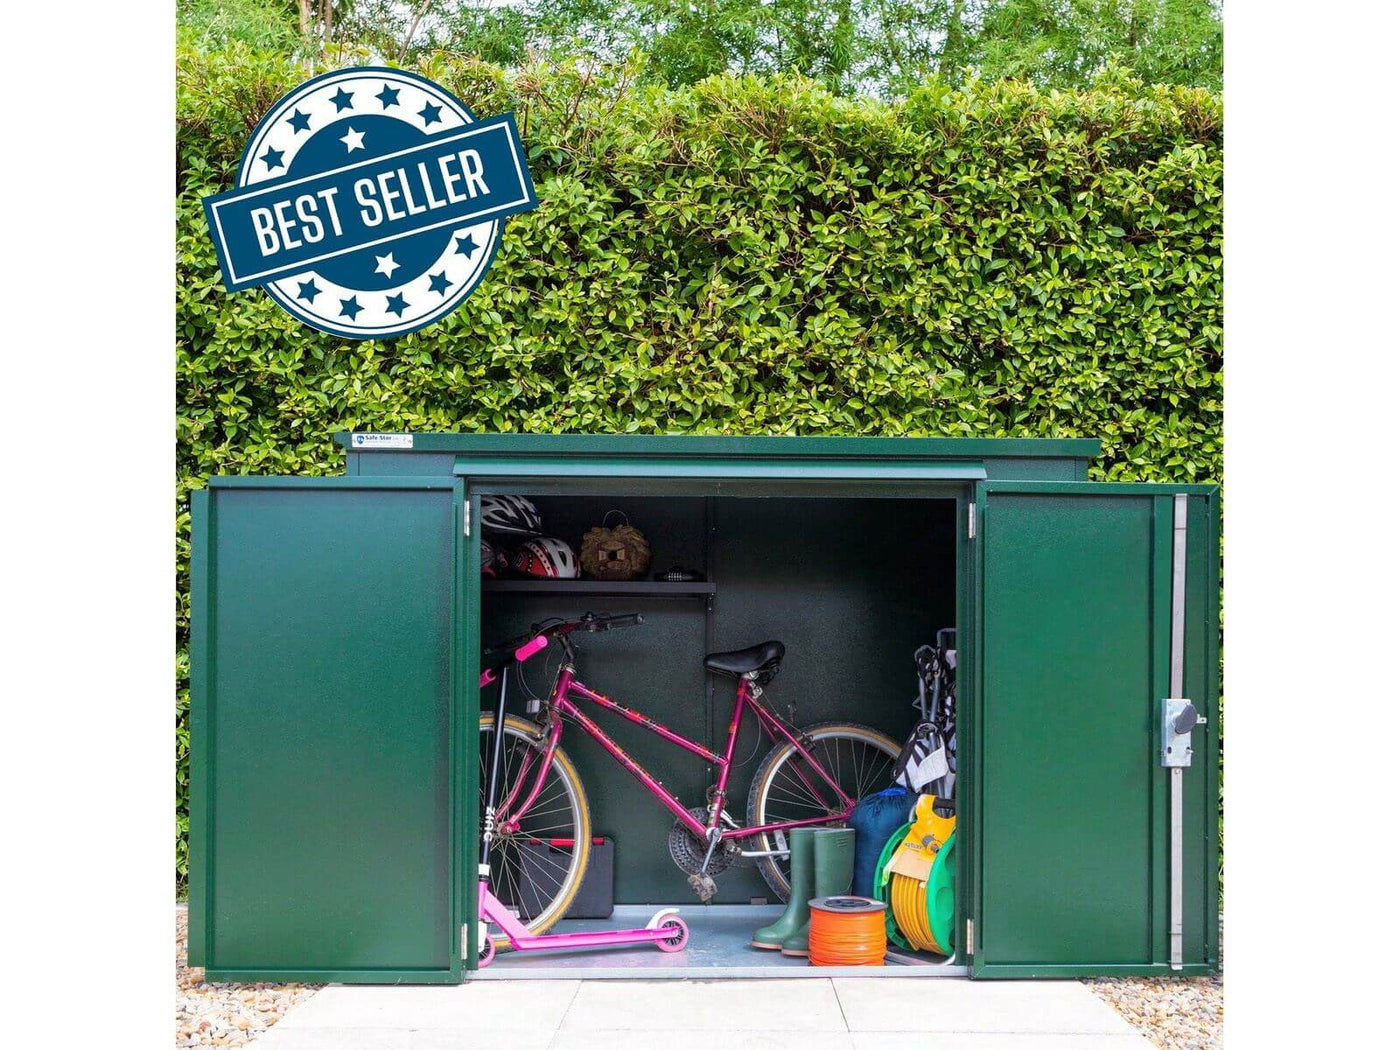 The Safestor range of secure bike sheds - a no brainer for bike security.